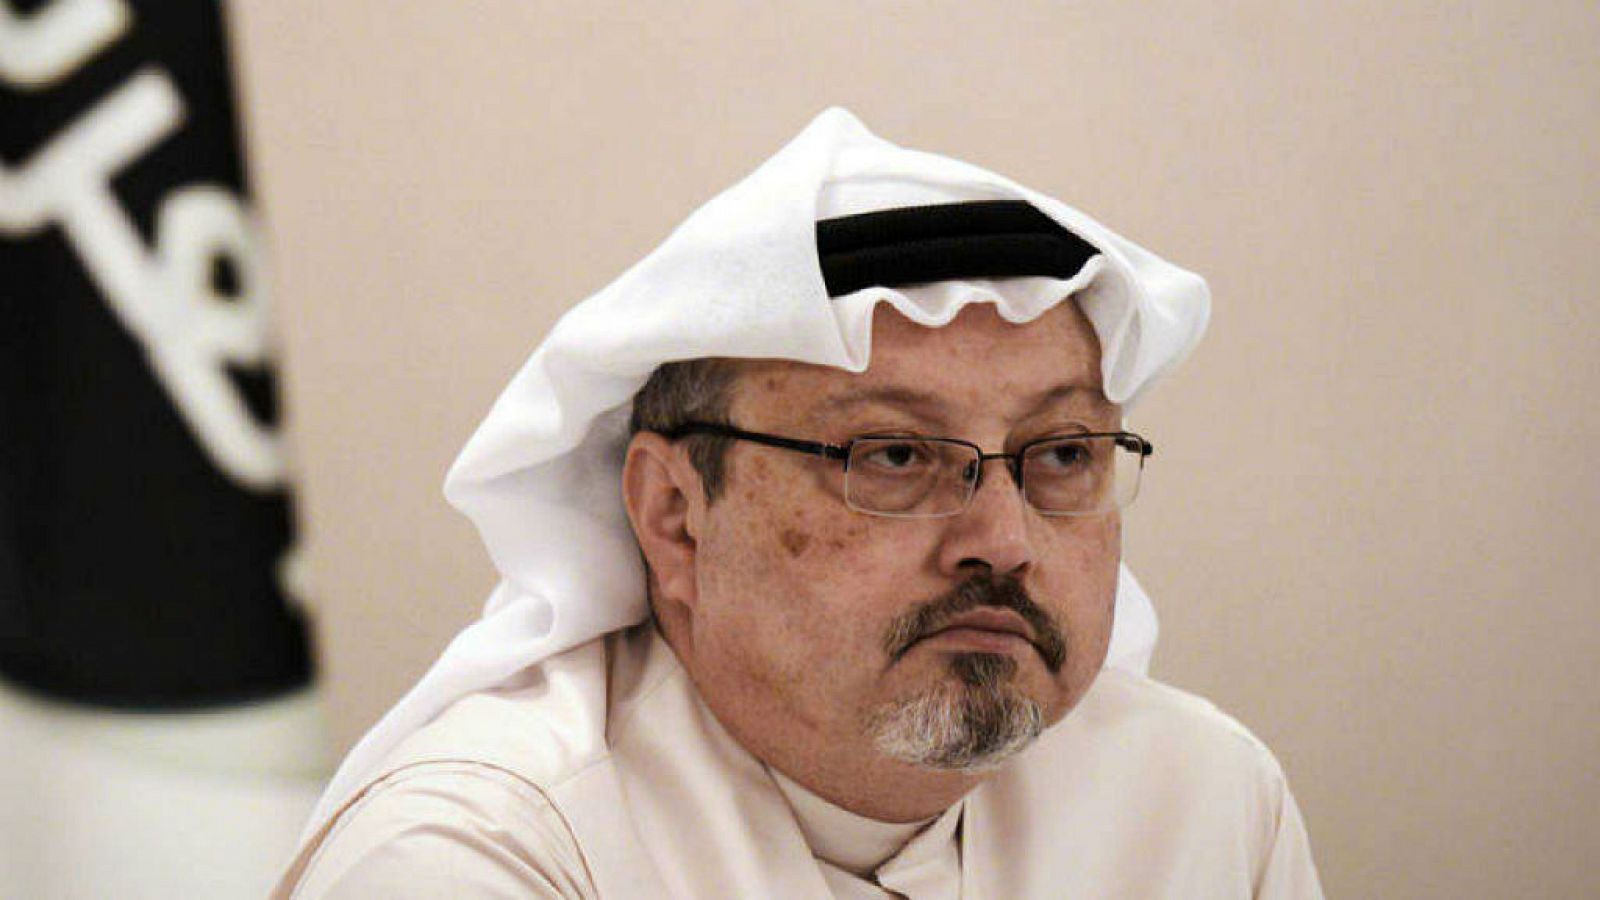  Boletines RNE - El rey saudí ordena investigar la desaparición de Khashoggi - 15/10/18 - Escuchar ahora